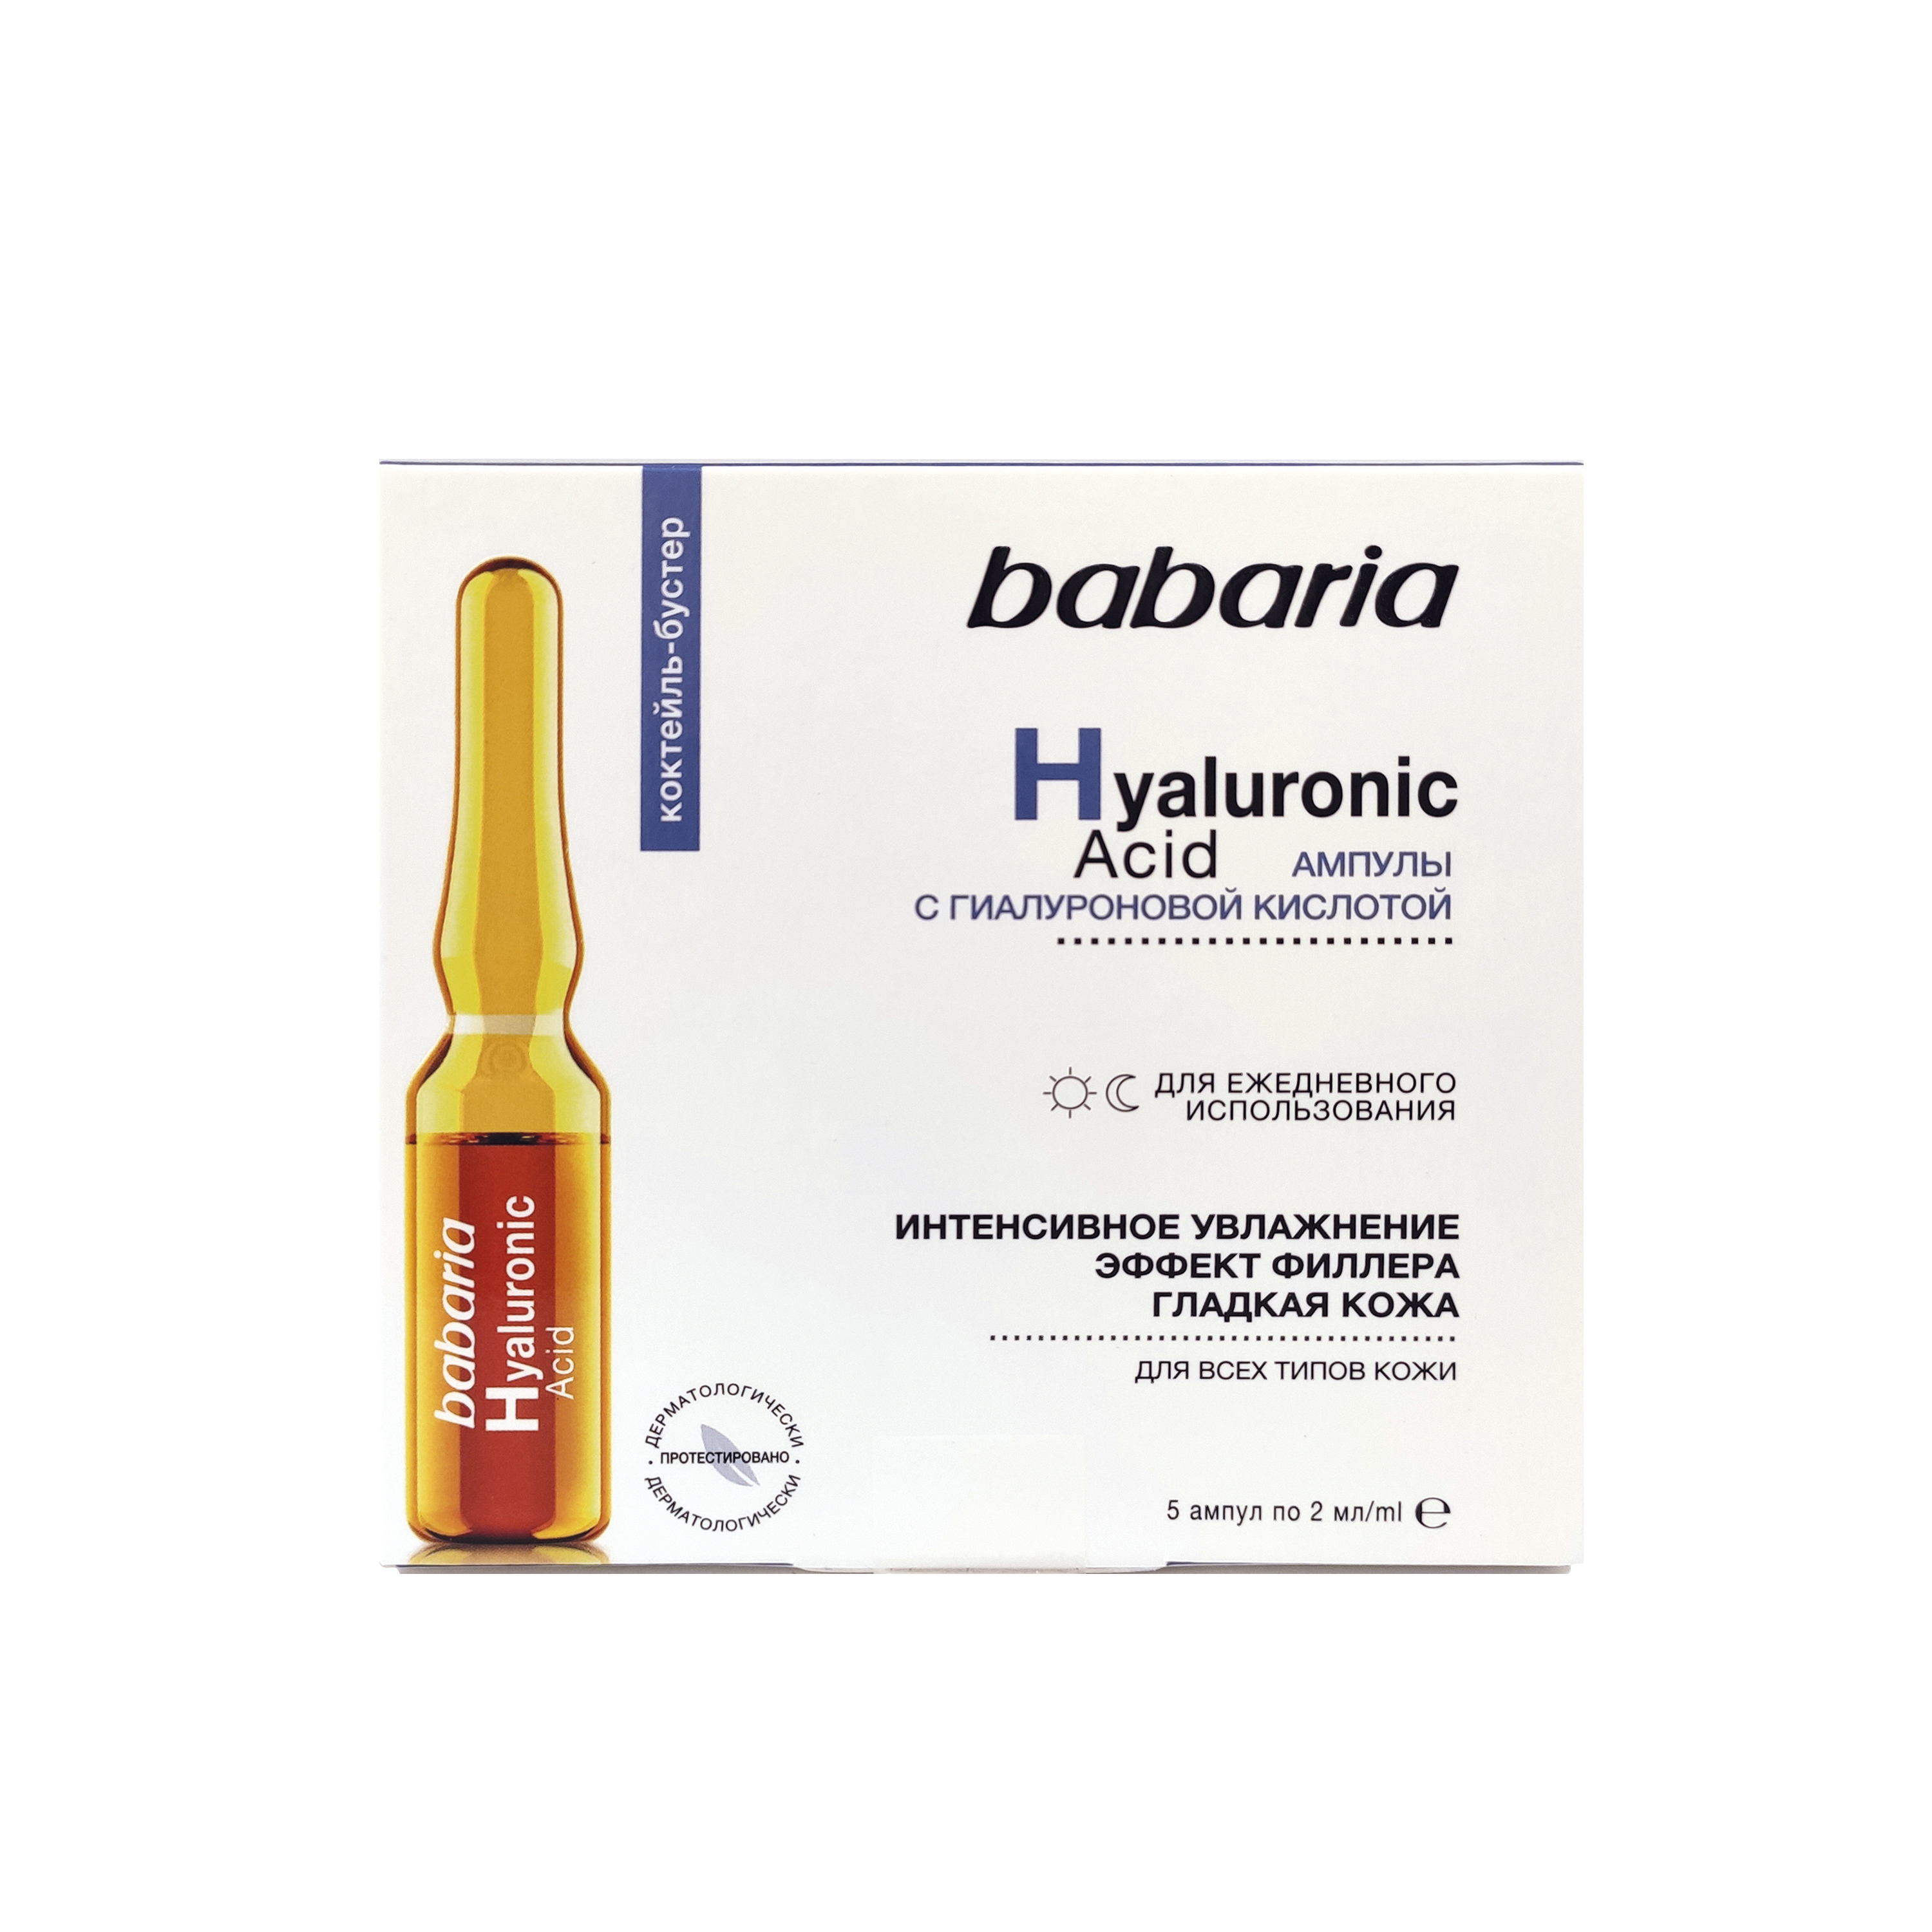 Сыворотка для лица Babaria интенсивное увлажнение, с гиалуроновой кислотой, 10 мл набор для лица babaria с гиалуроновой кислотой крем сыворотка сыворотка в ампулах